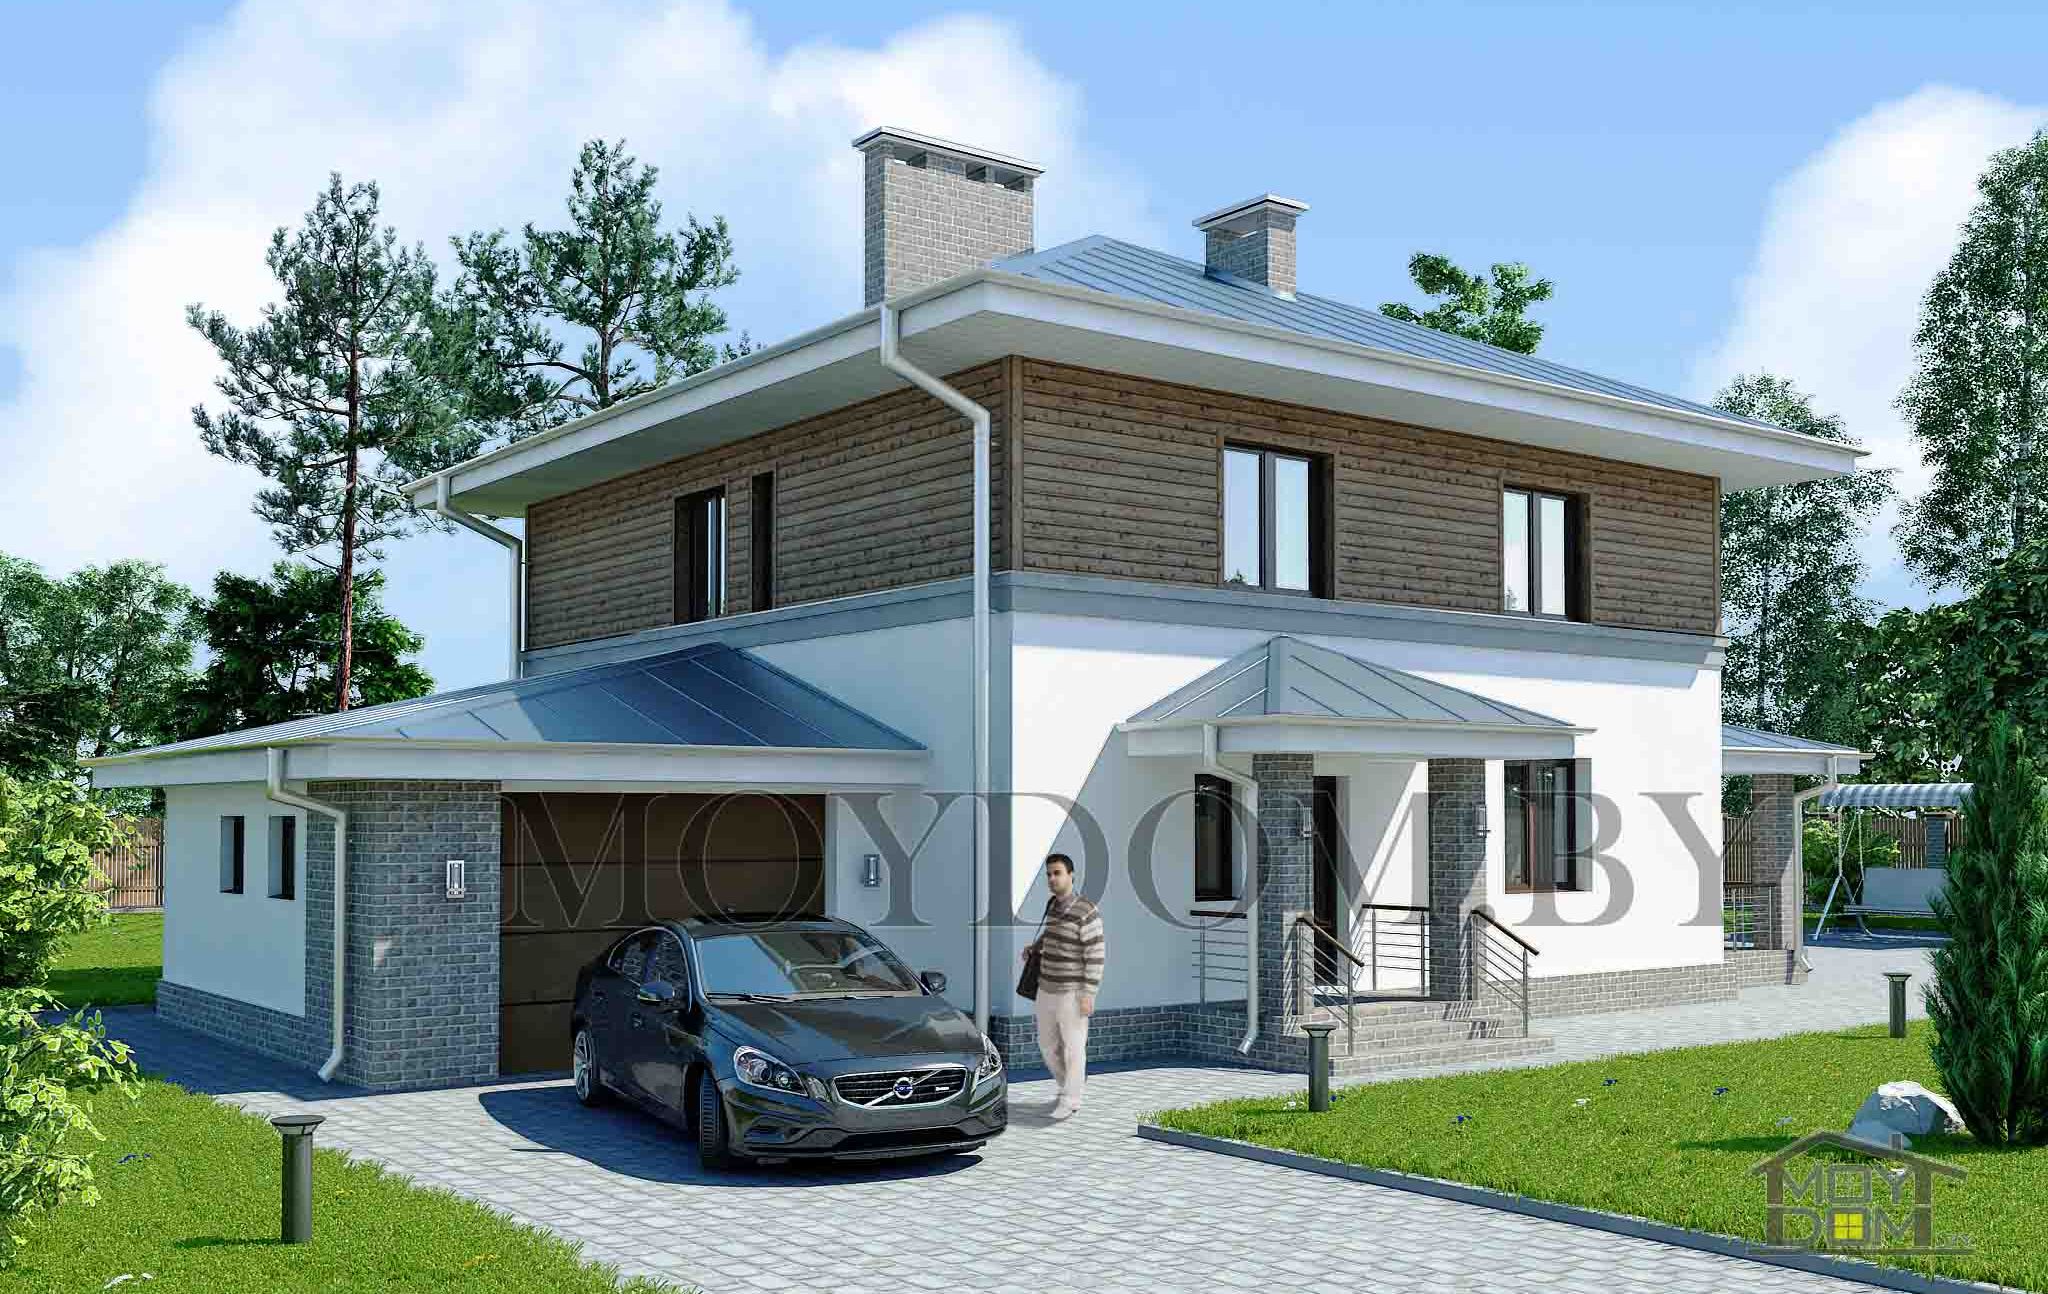 проект двухэтажного дома с гаражом